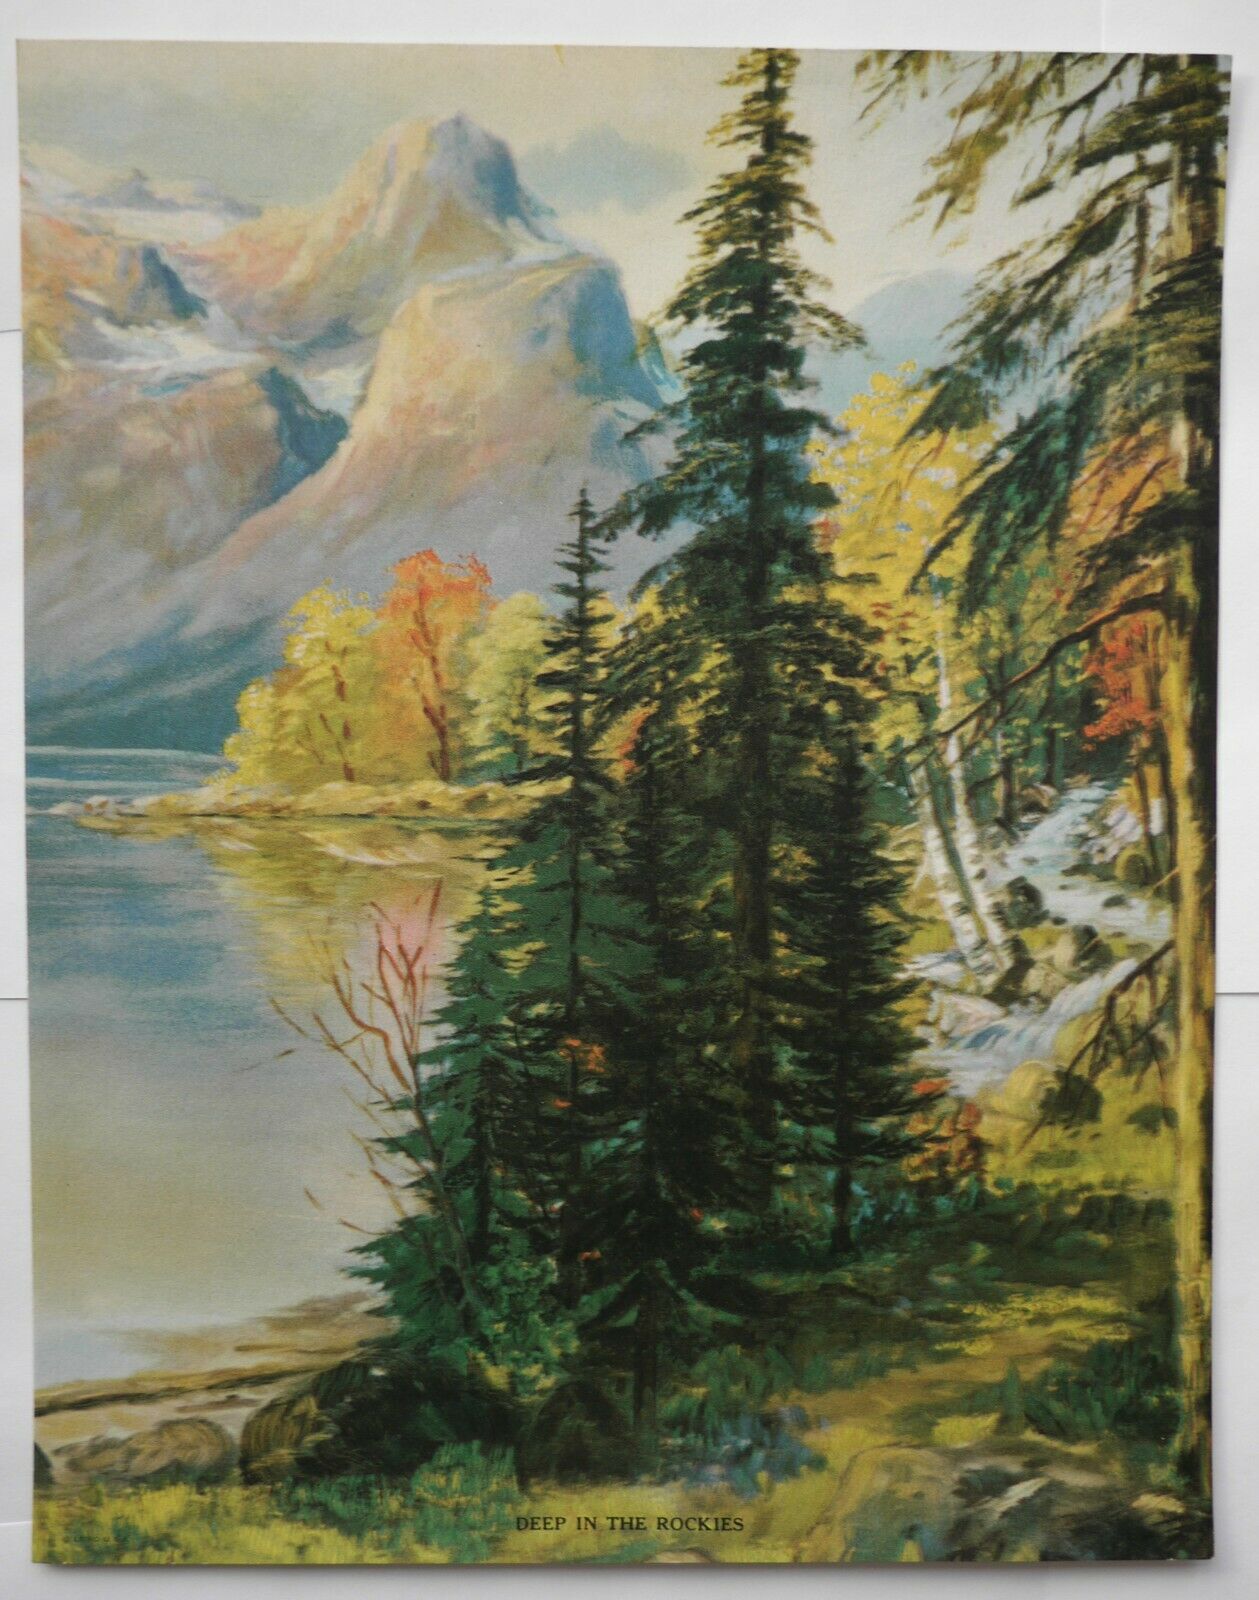 Dan B. Conrad Vintage Litho Print 9.5x7.25" Rockies Painting Louis F Dow, Co.